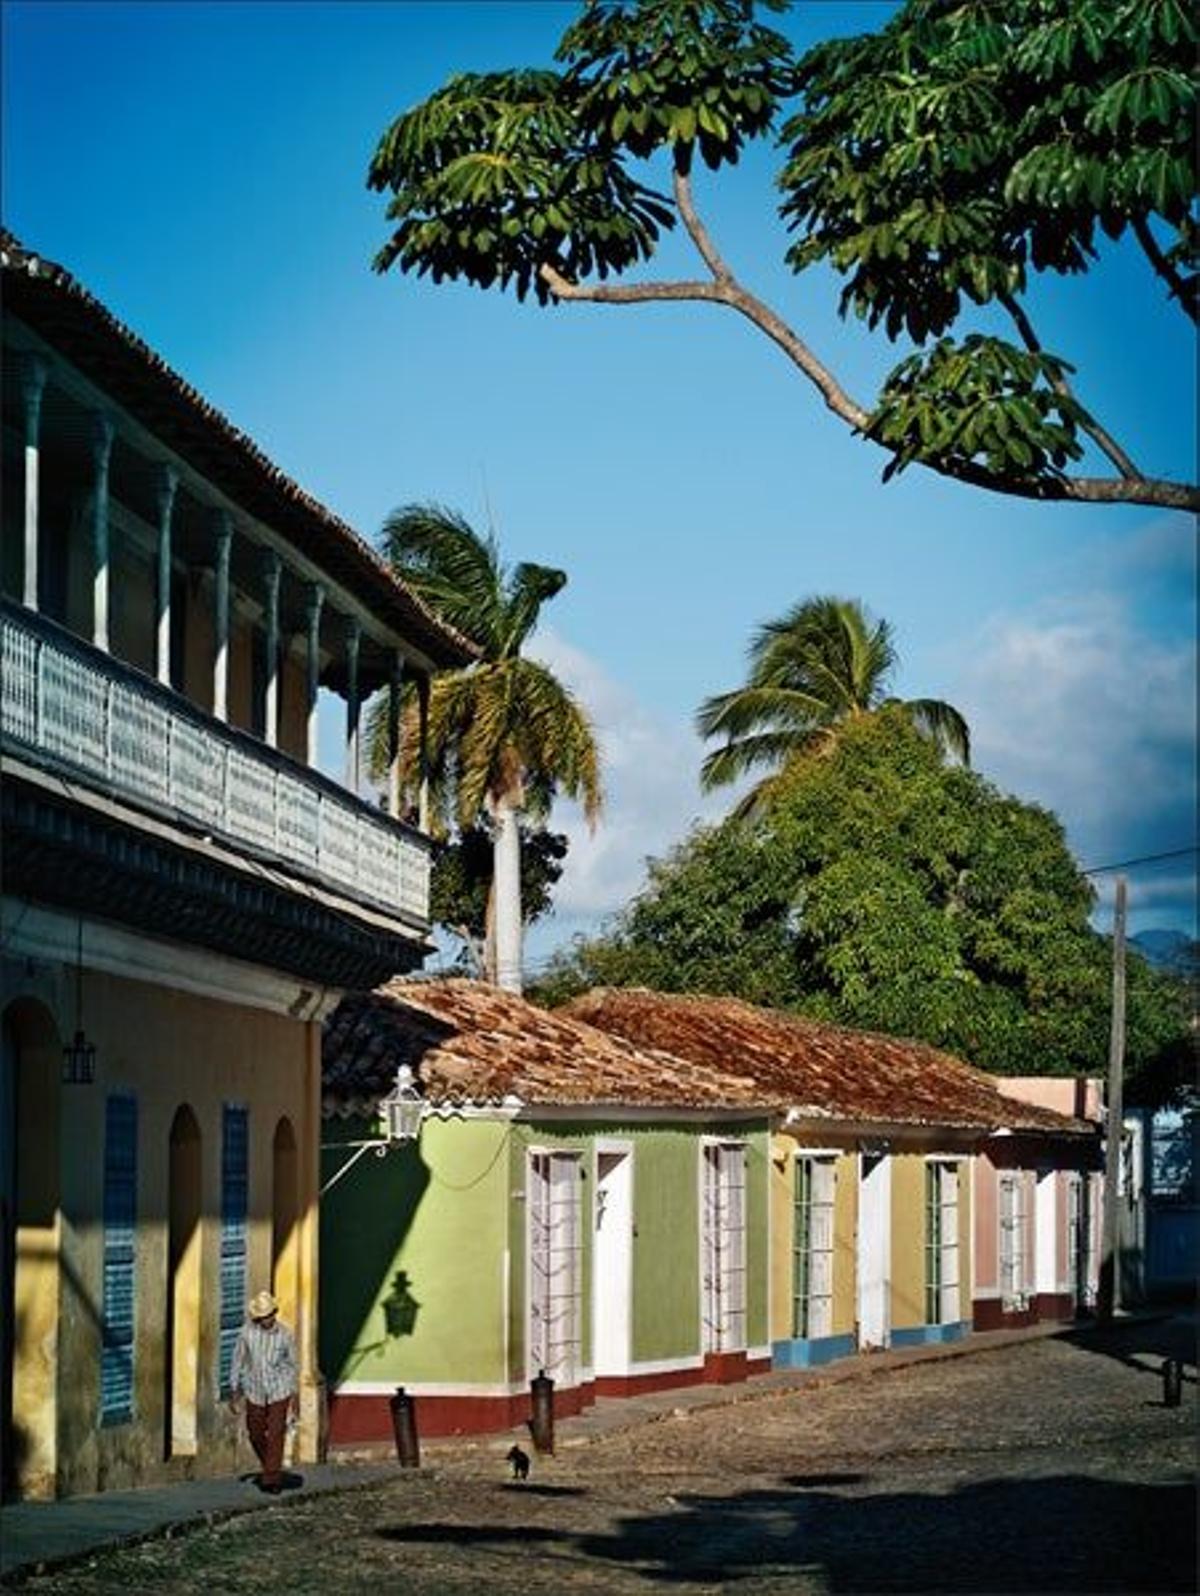 Los adoquines de las calles de
la ciudad de Trinidad, fundada
en el año 1514, llegaban de
España c